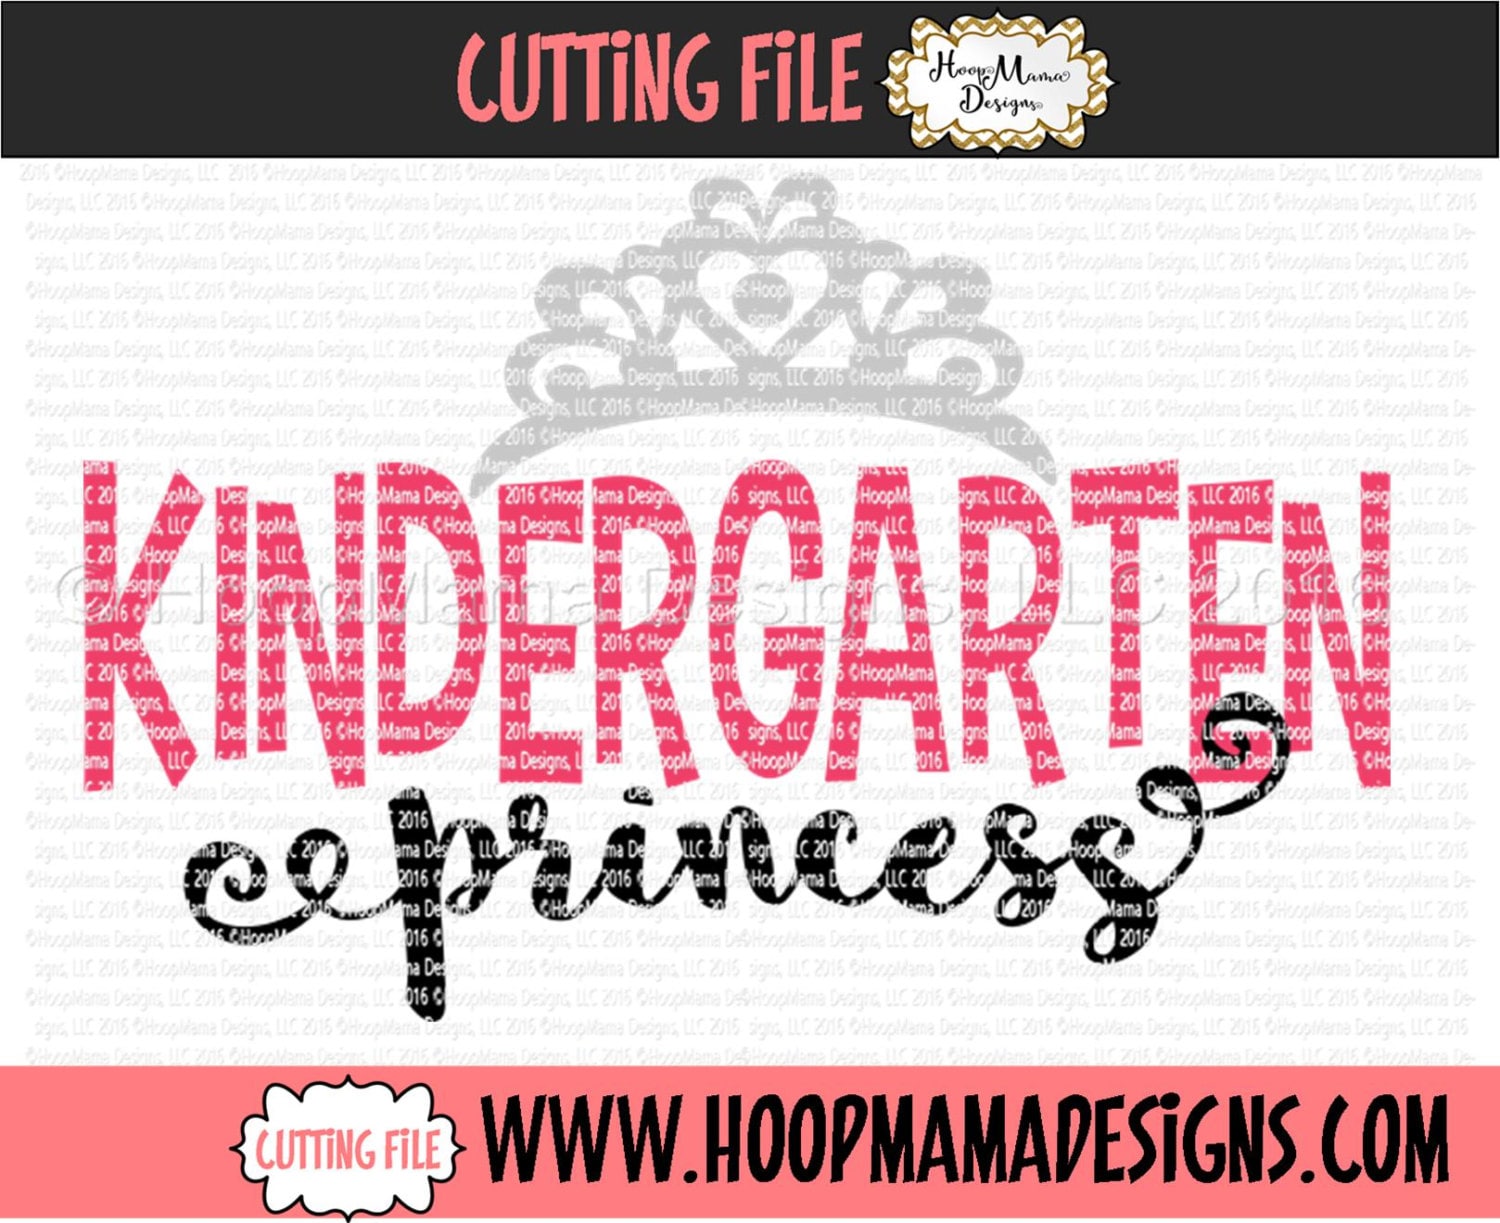 Free Free Kindergarten Princess Svg 548 SVG PNG EPS DXF File